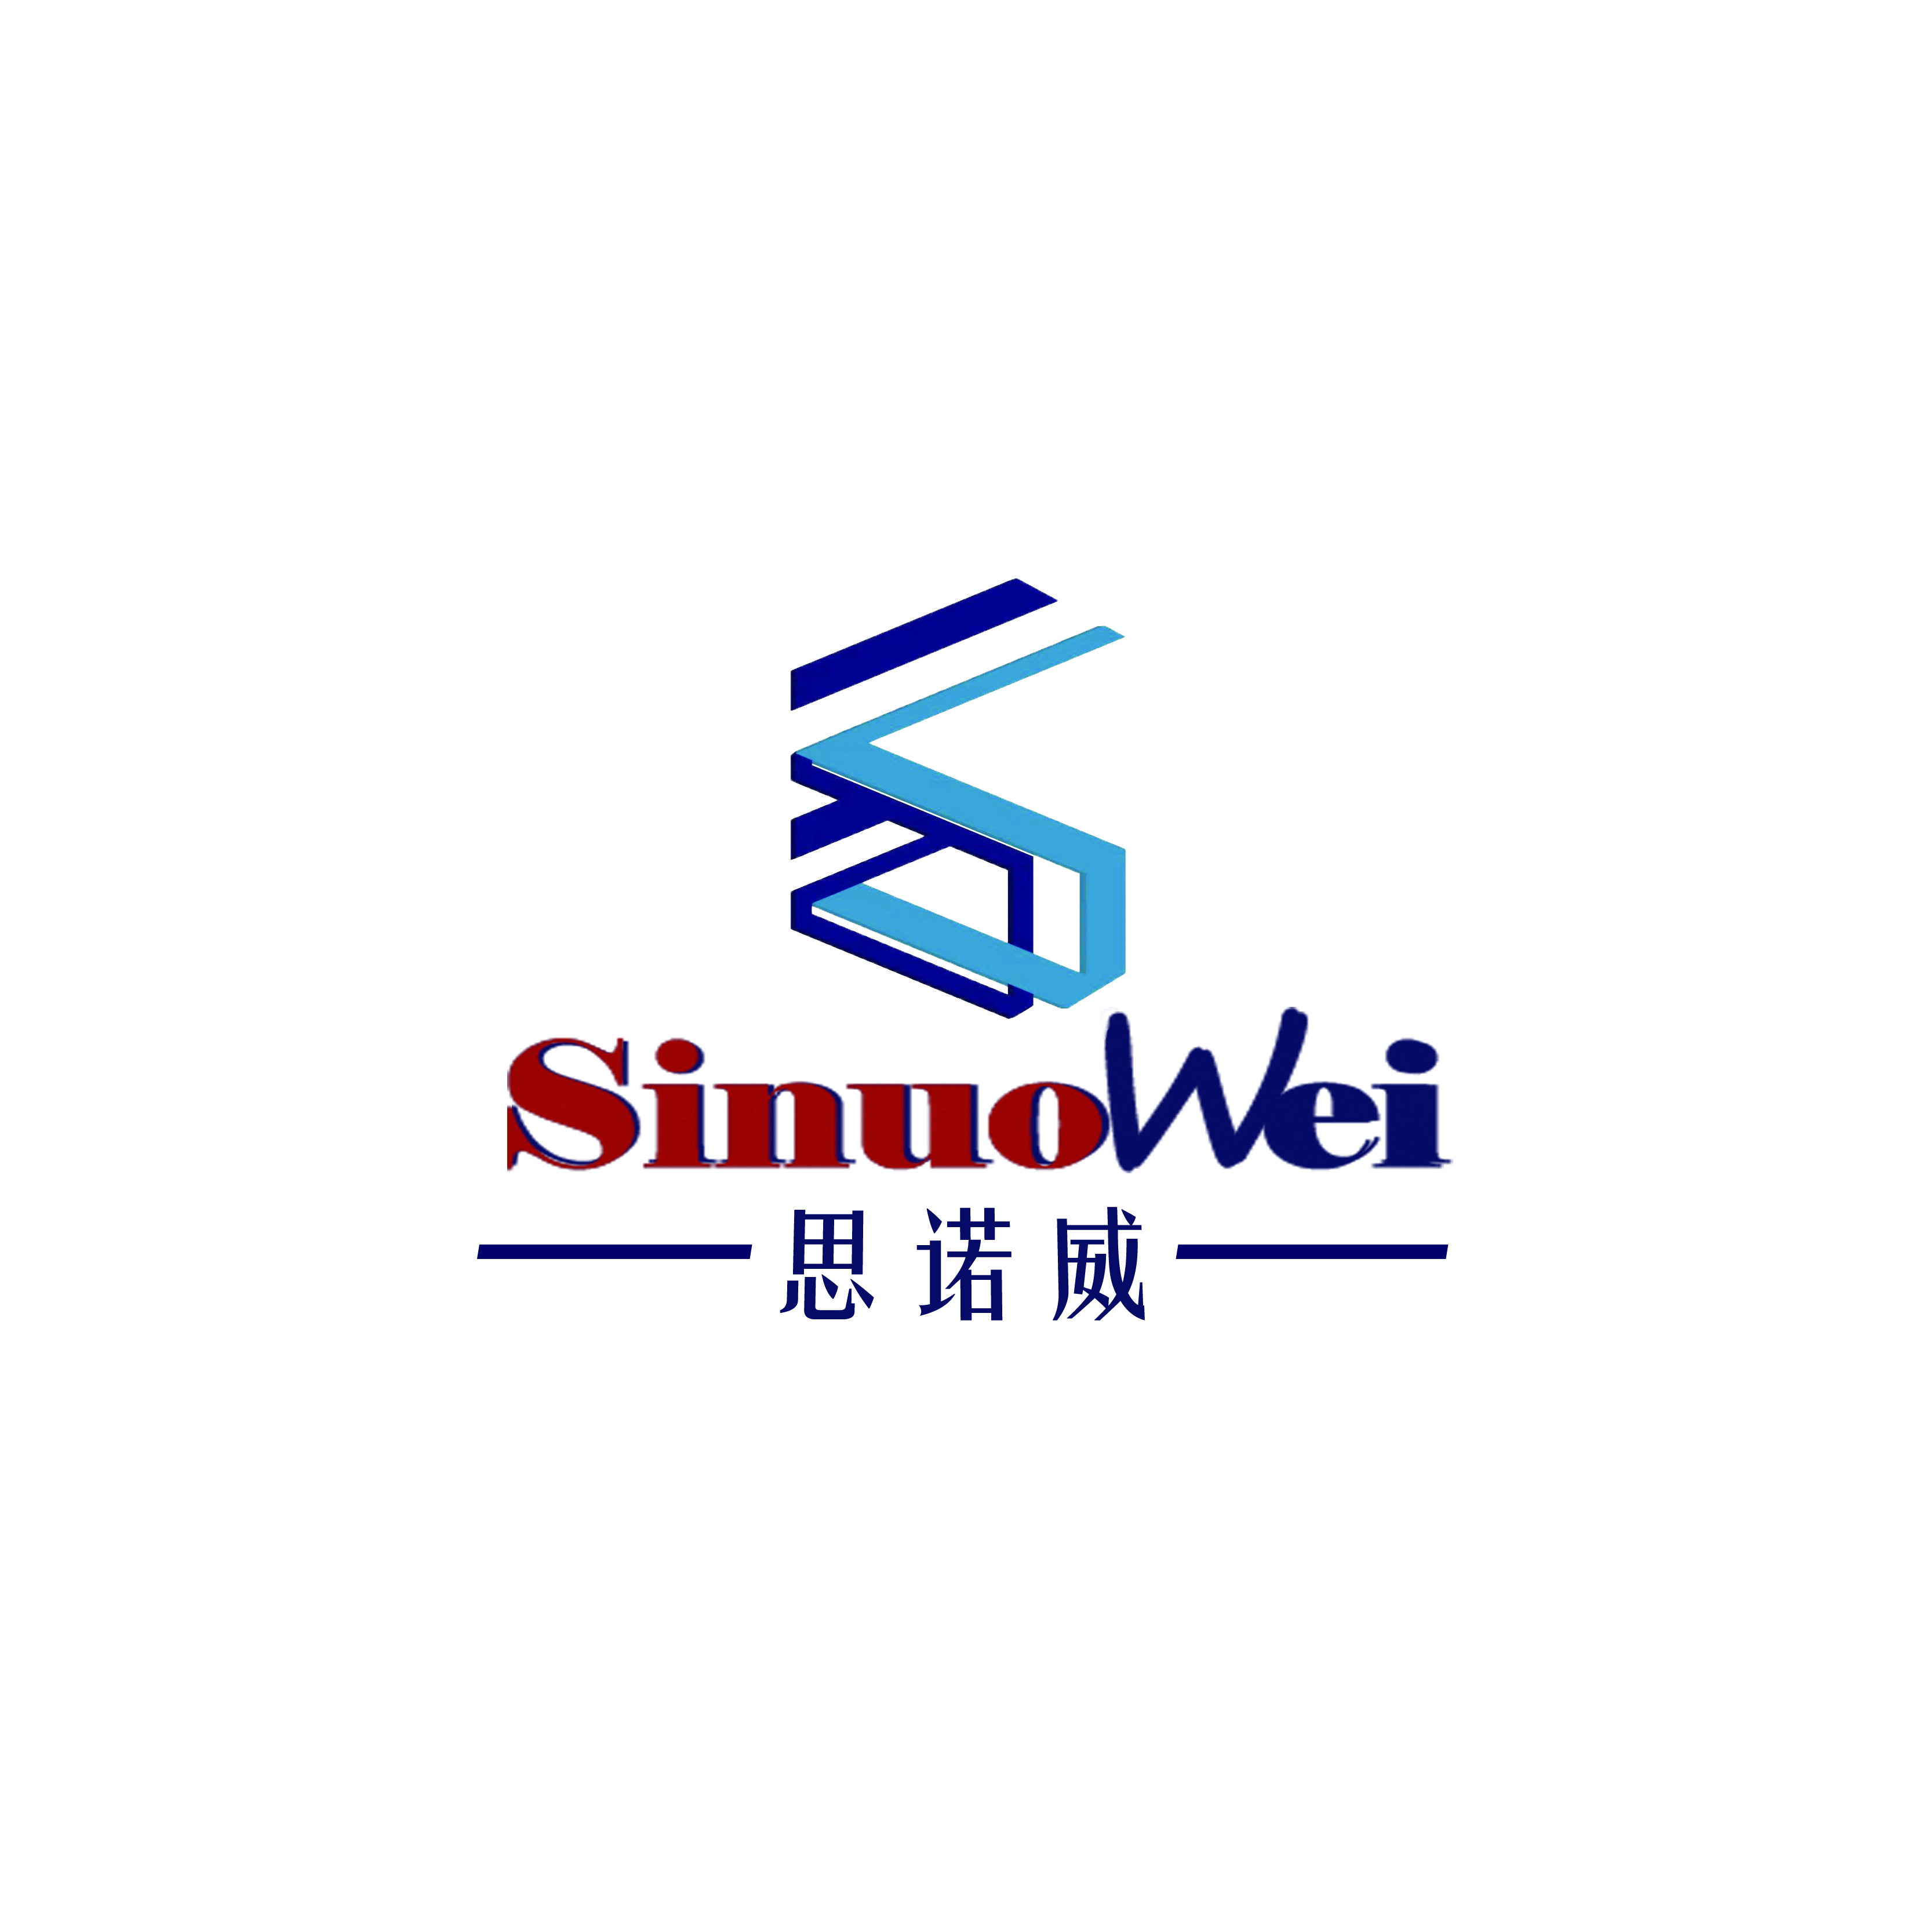 la fábrica de equipos de automatización sinuowei comienza a trabajar hoy